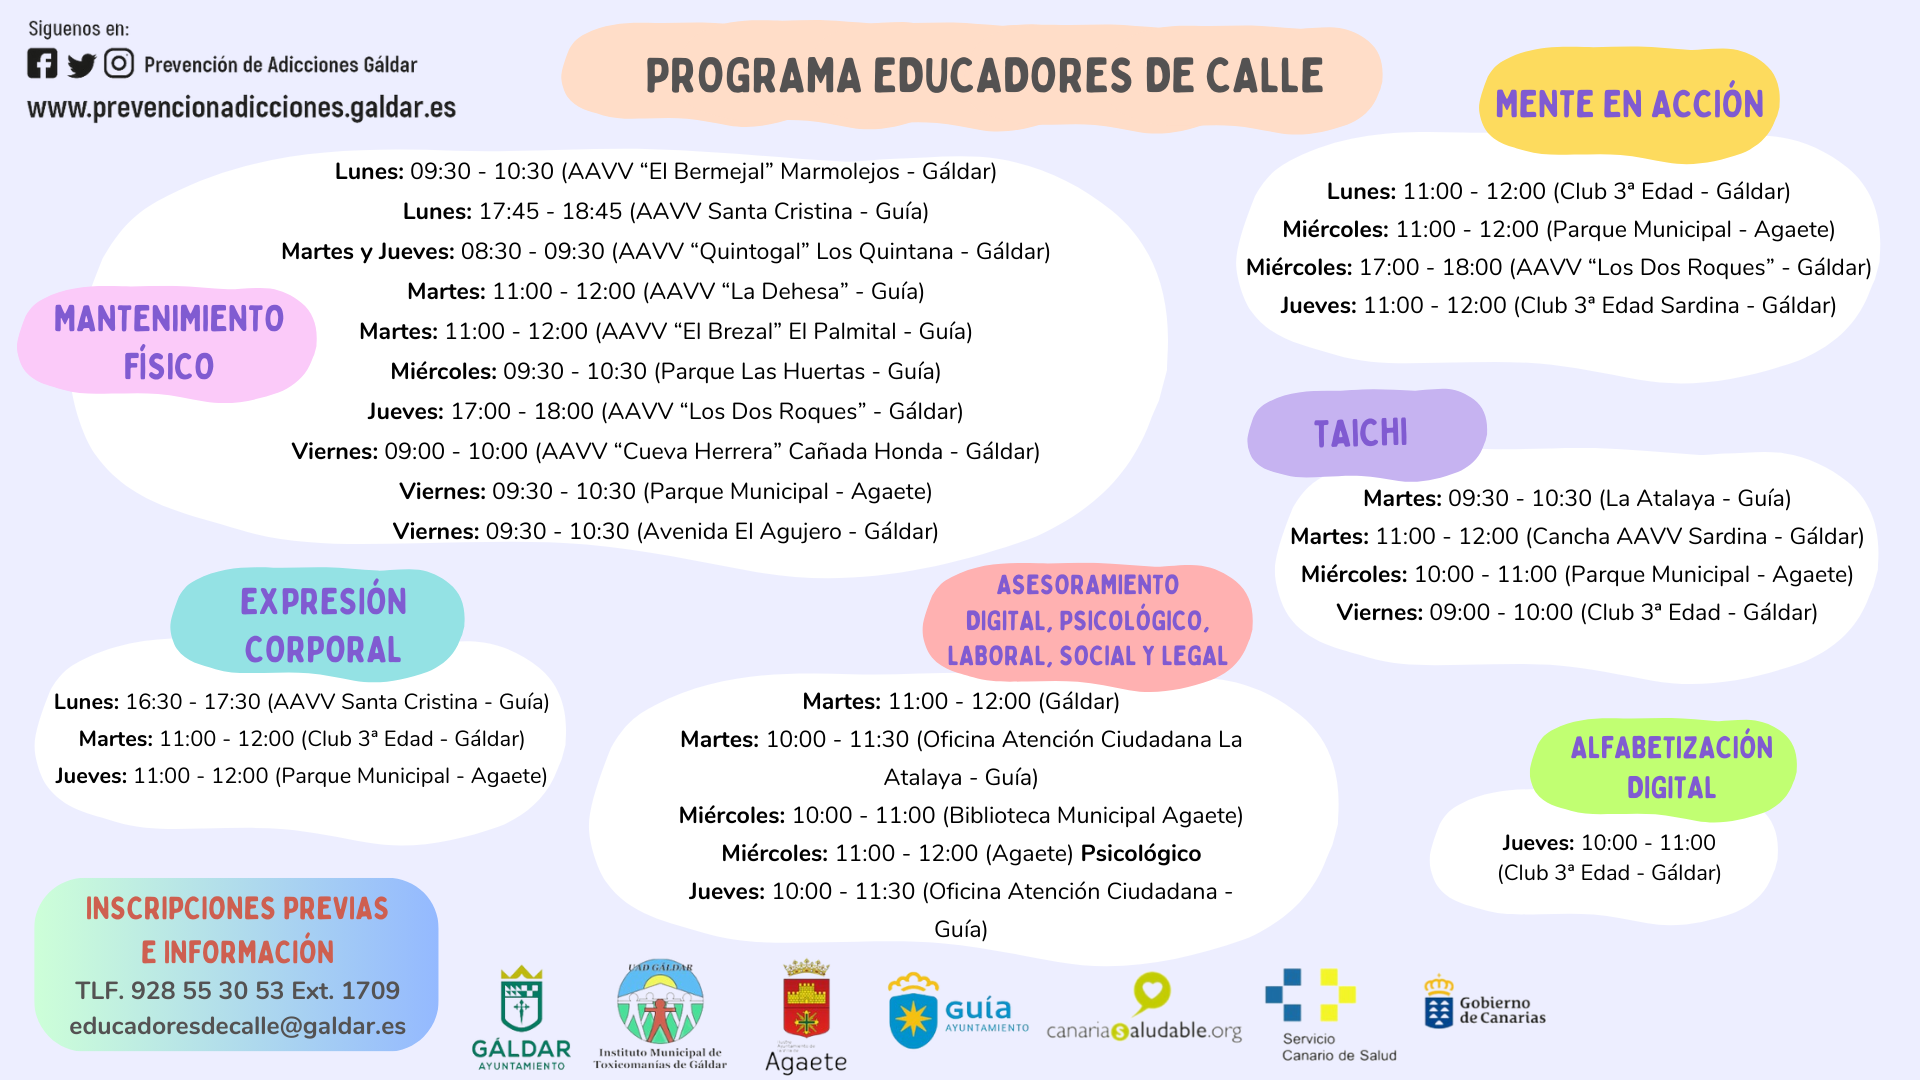 El programa de ‘Educadores de Calle’ lleva a cabo numerosas actividades en diferentes espacios del municipio